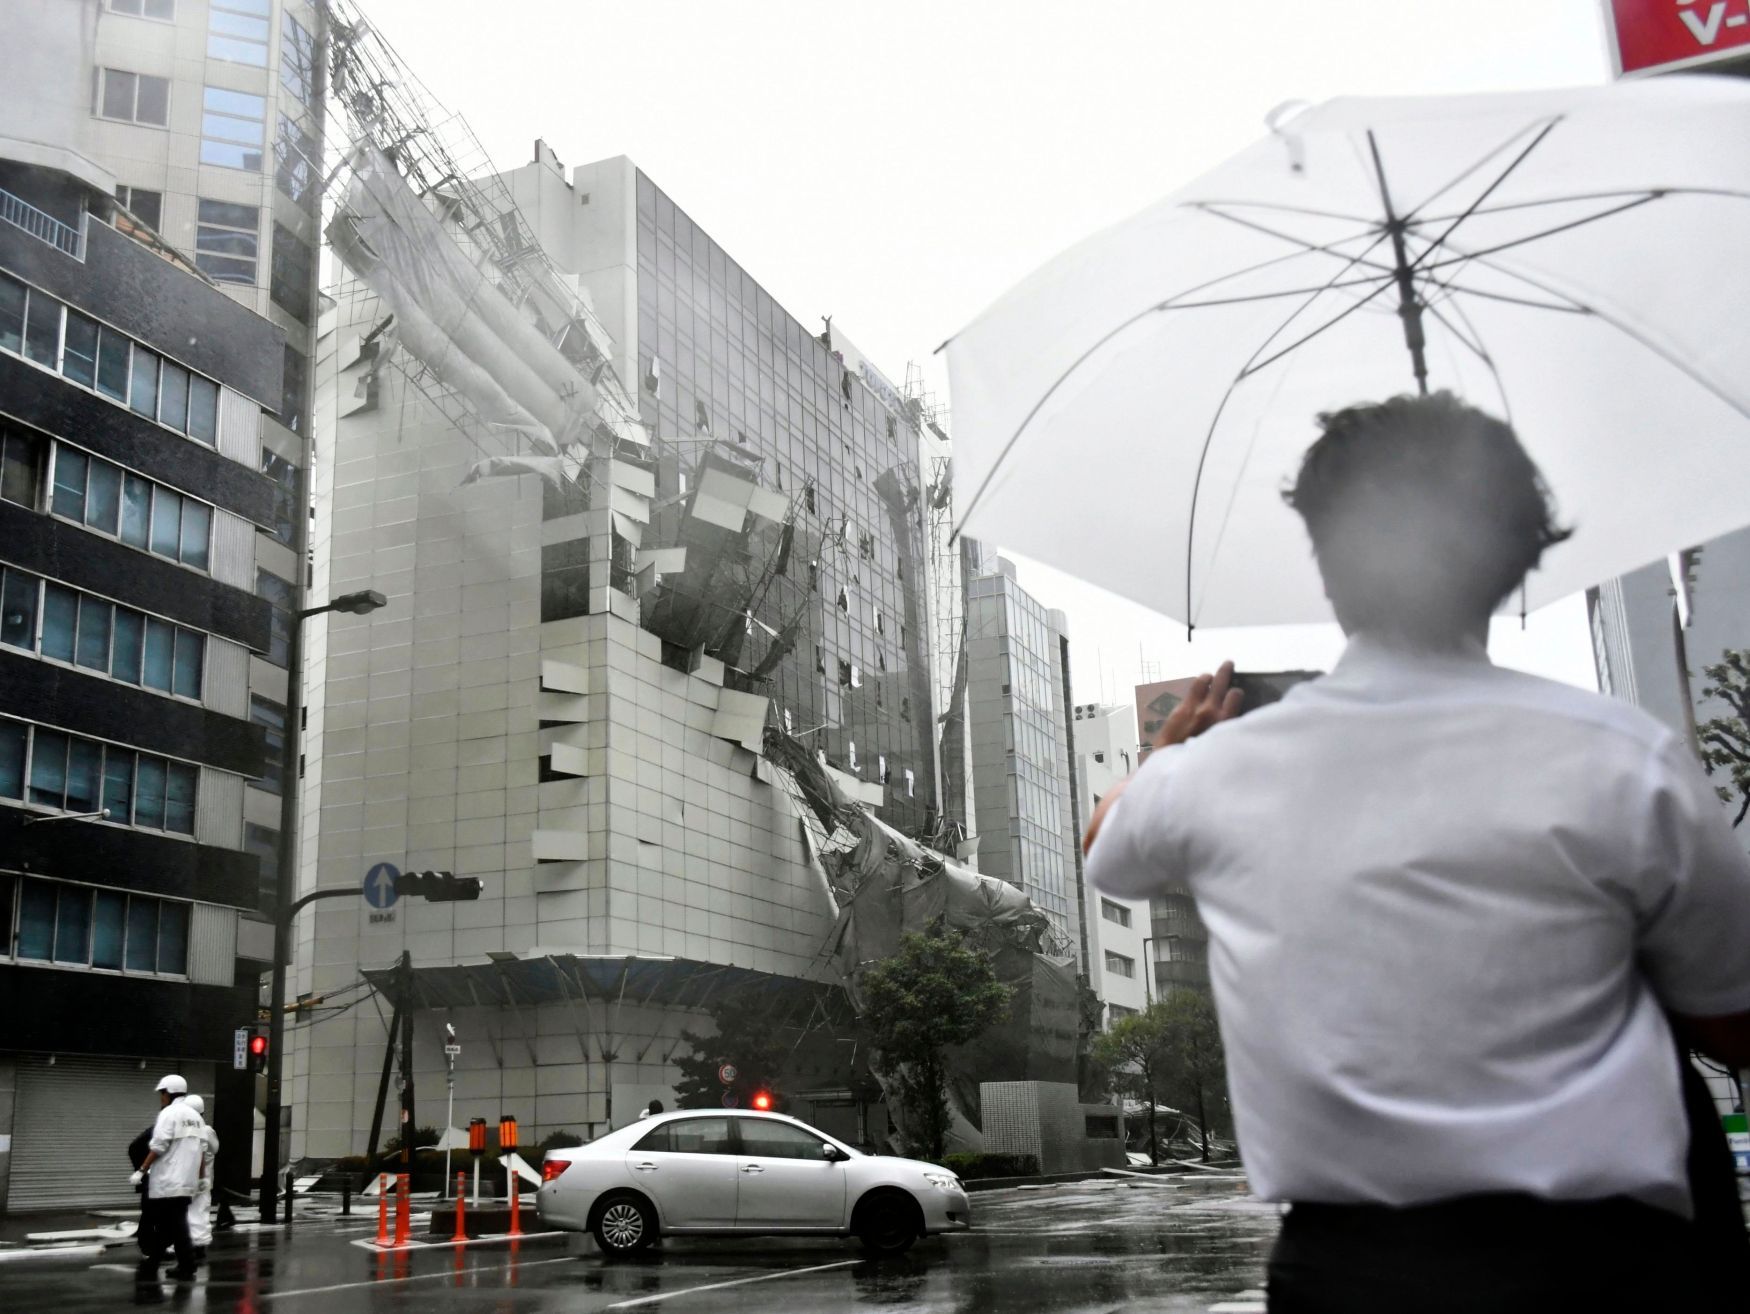 Fotogalerie / Tajfun Jebi zasáhl Japonsko / Počasí / Zahraničí / ČTK / 4. 9. 2018 / 1